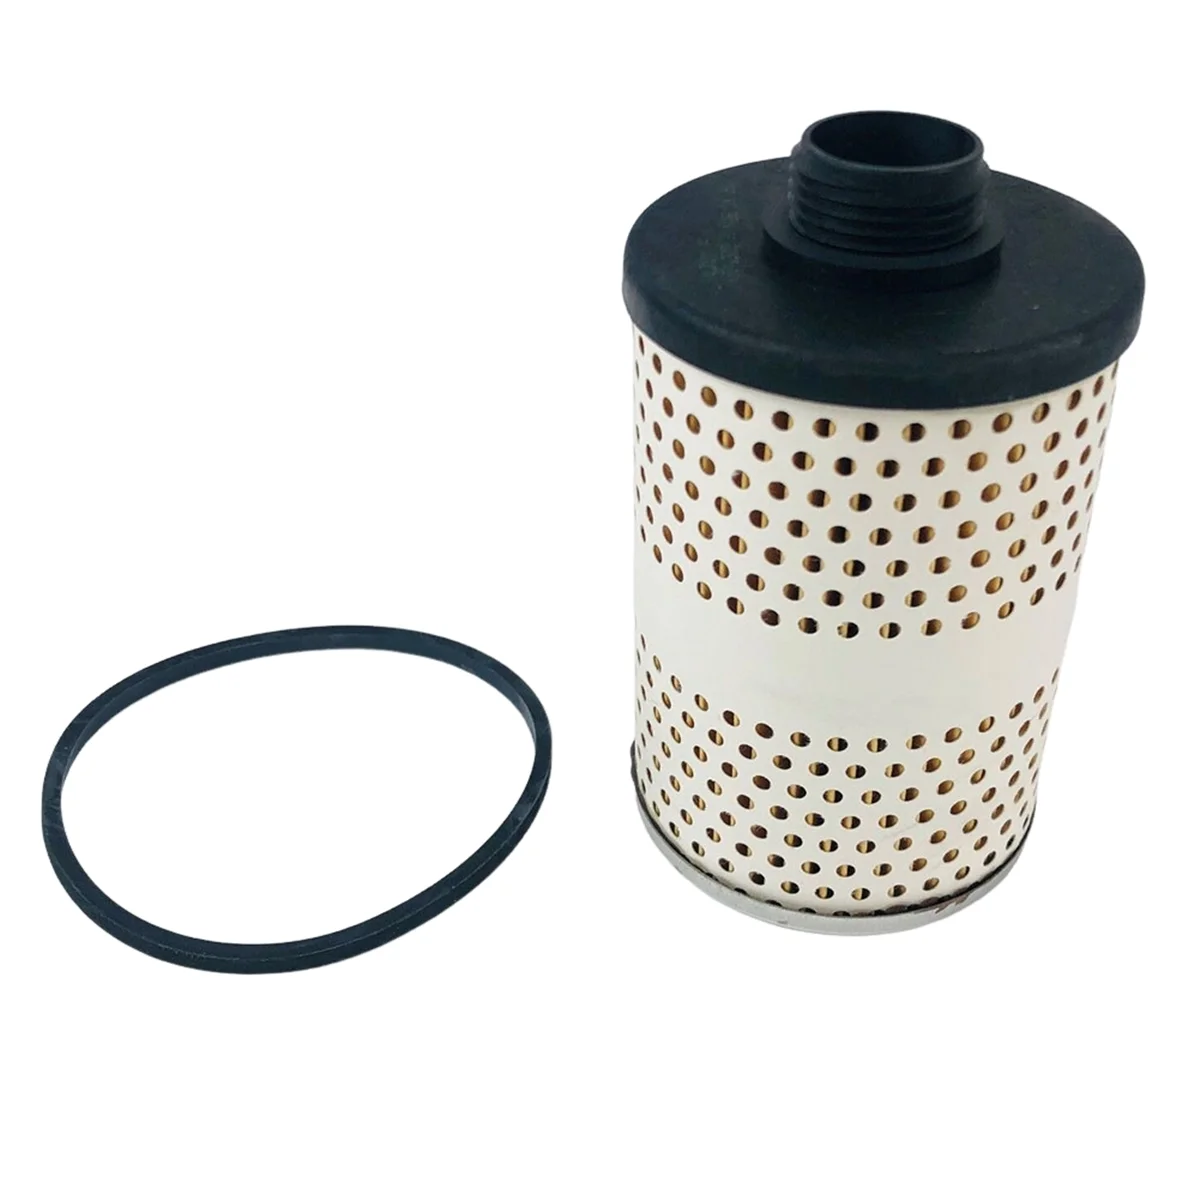 

Топливный бак для автомобиля топливные фильтры элементы FF246 фотоэлемент для труб фильтры автомобильные аксессуары